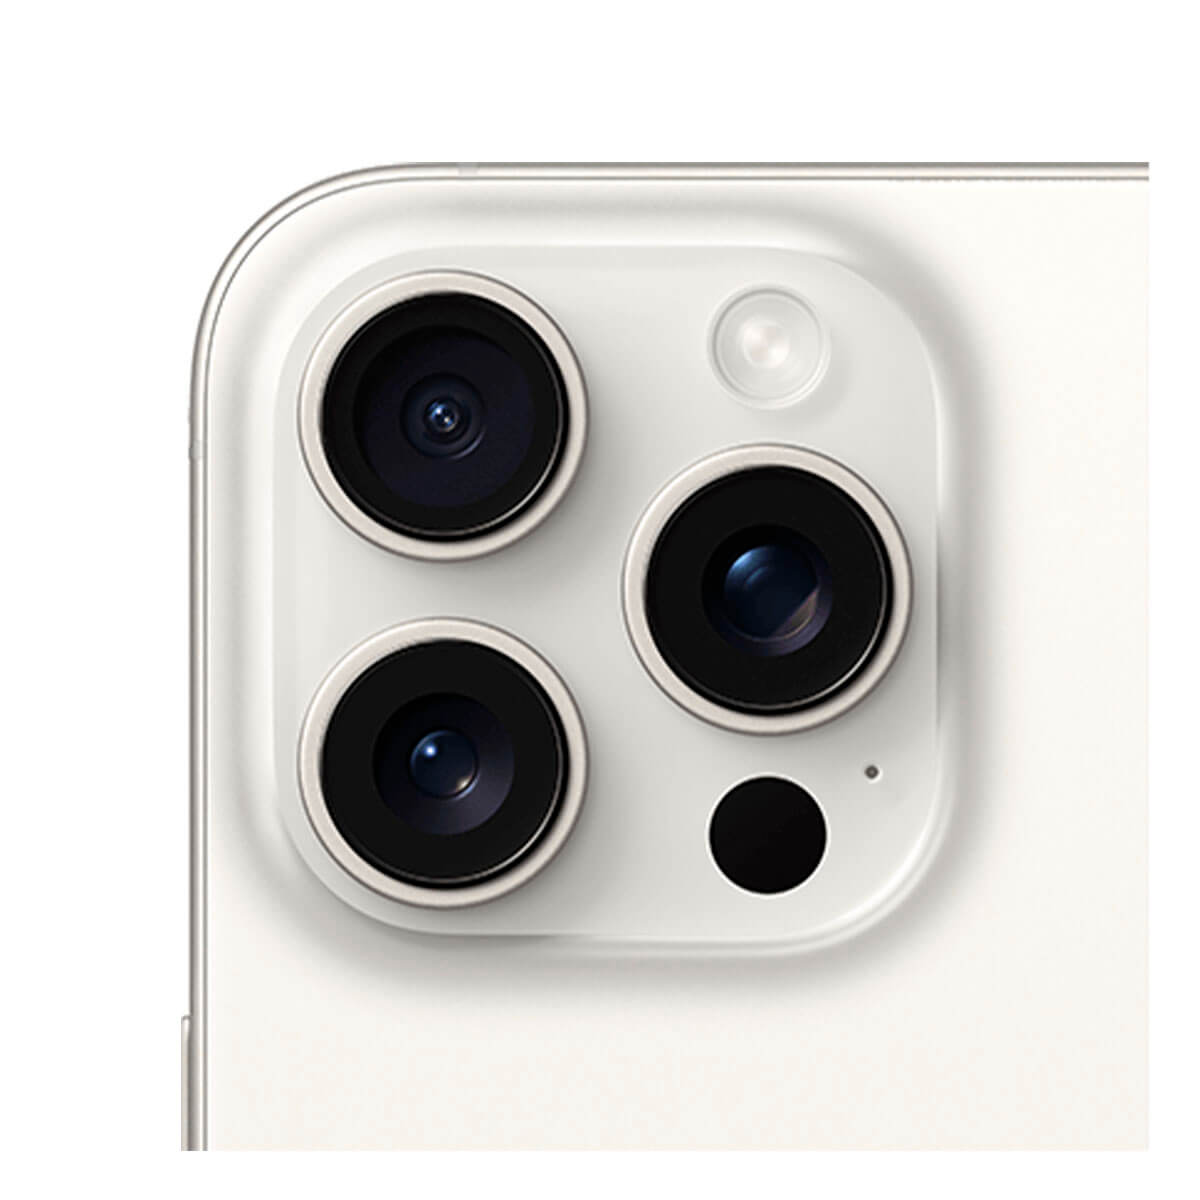 Apple iPhone 15 Pro Max 256GB Blanco Titanio (White Titanium) MU783QL/